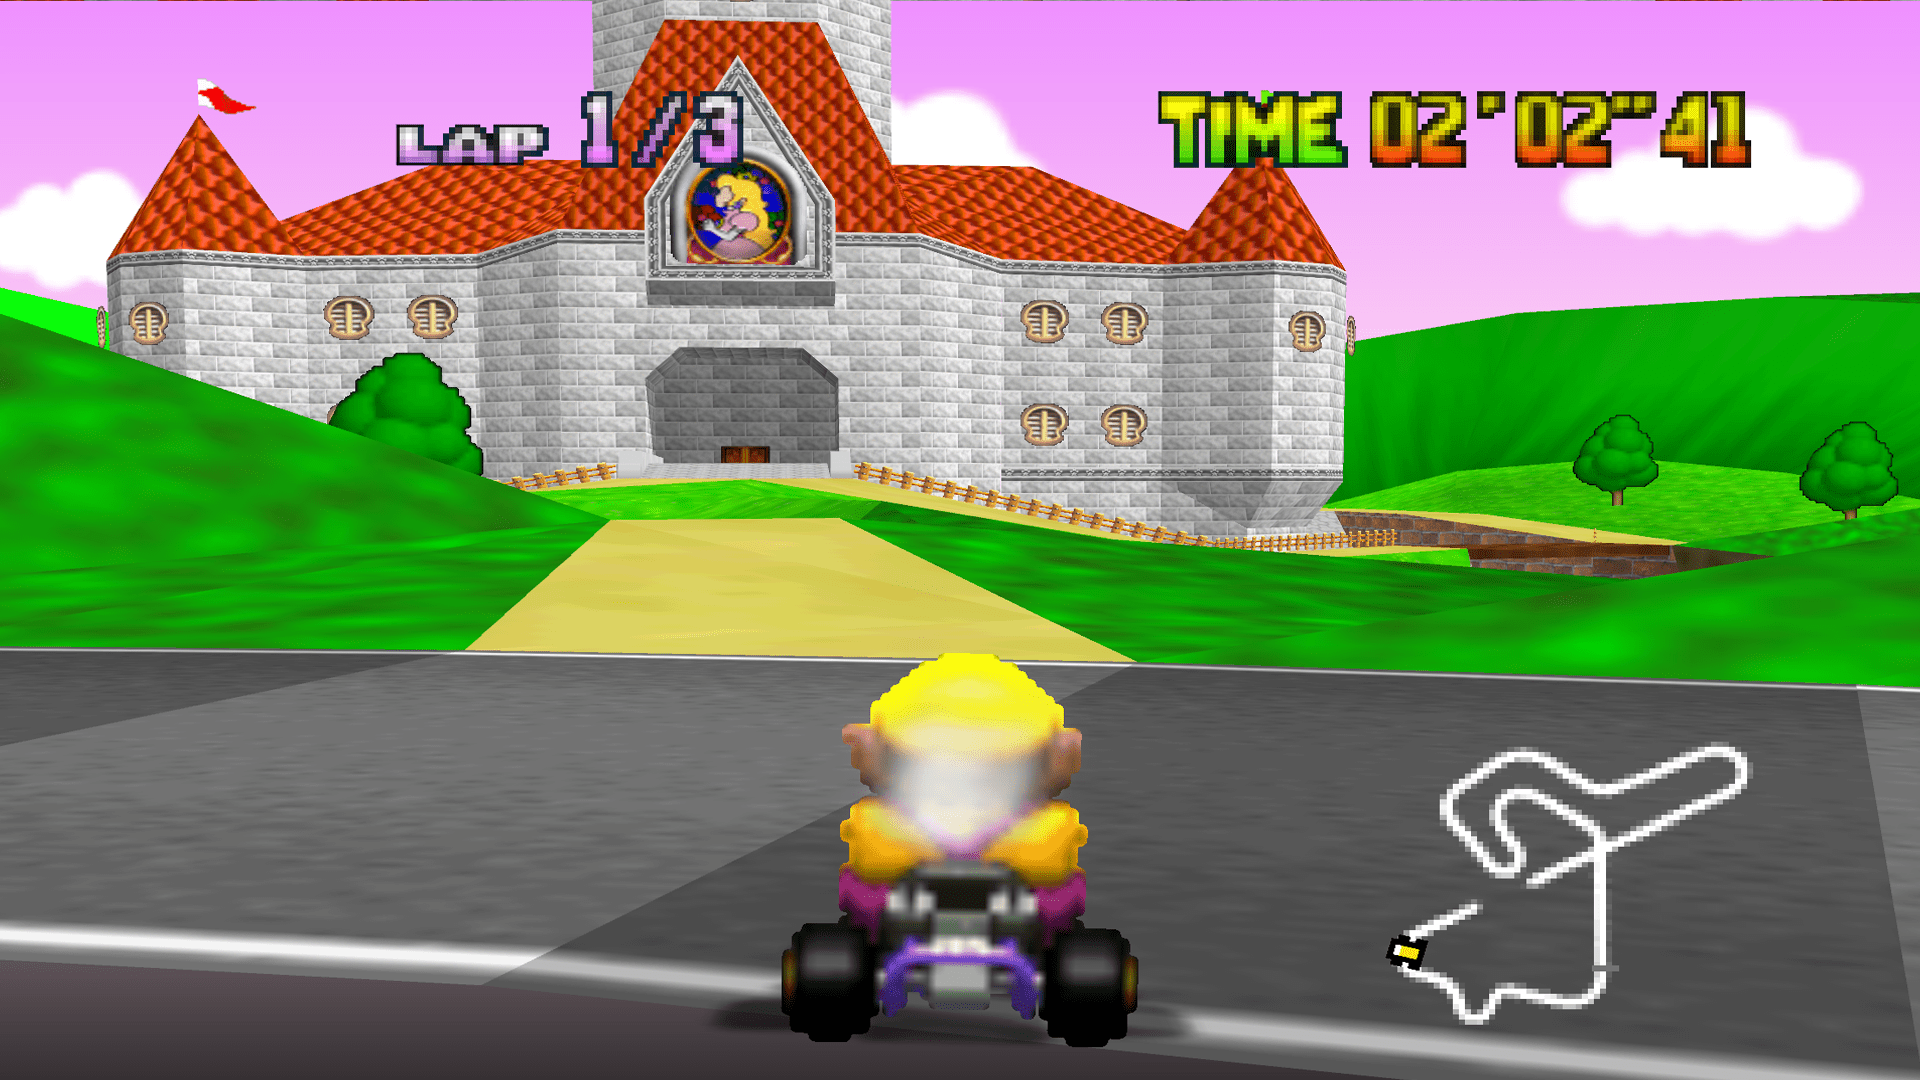 Mario Kart: as dez pistas mais difíceis da série - Nintendo Blast